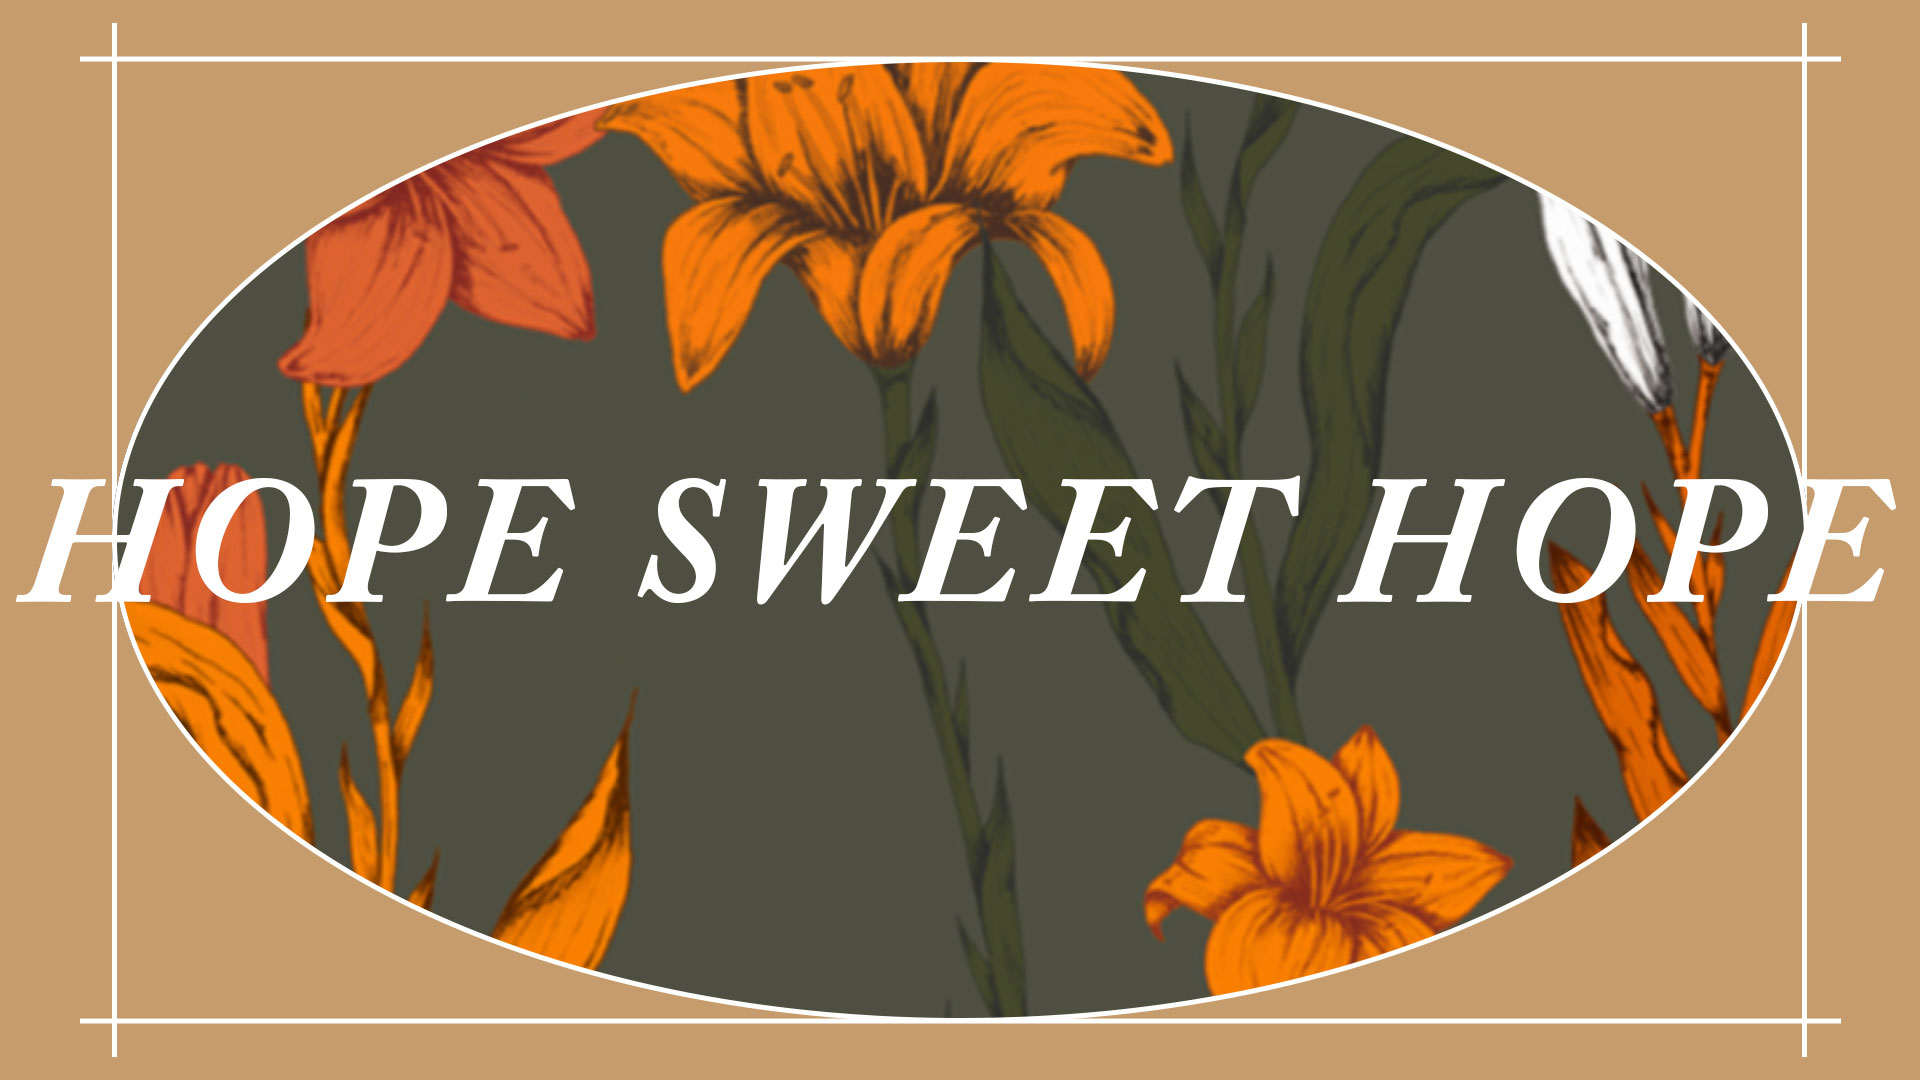 Series: Hope Sweet Hope